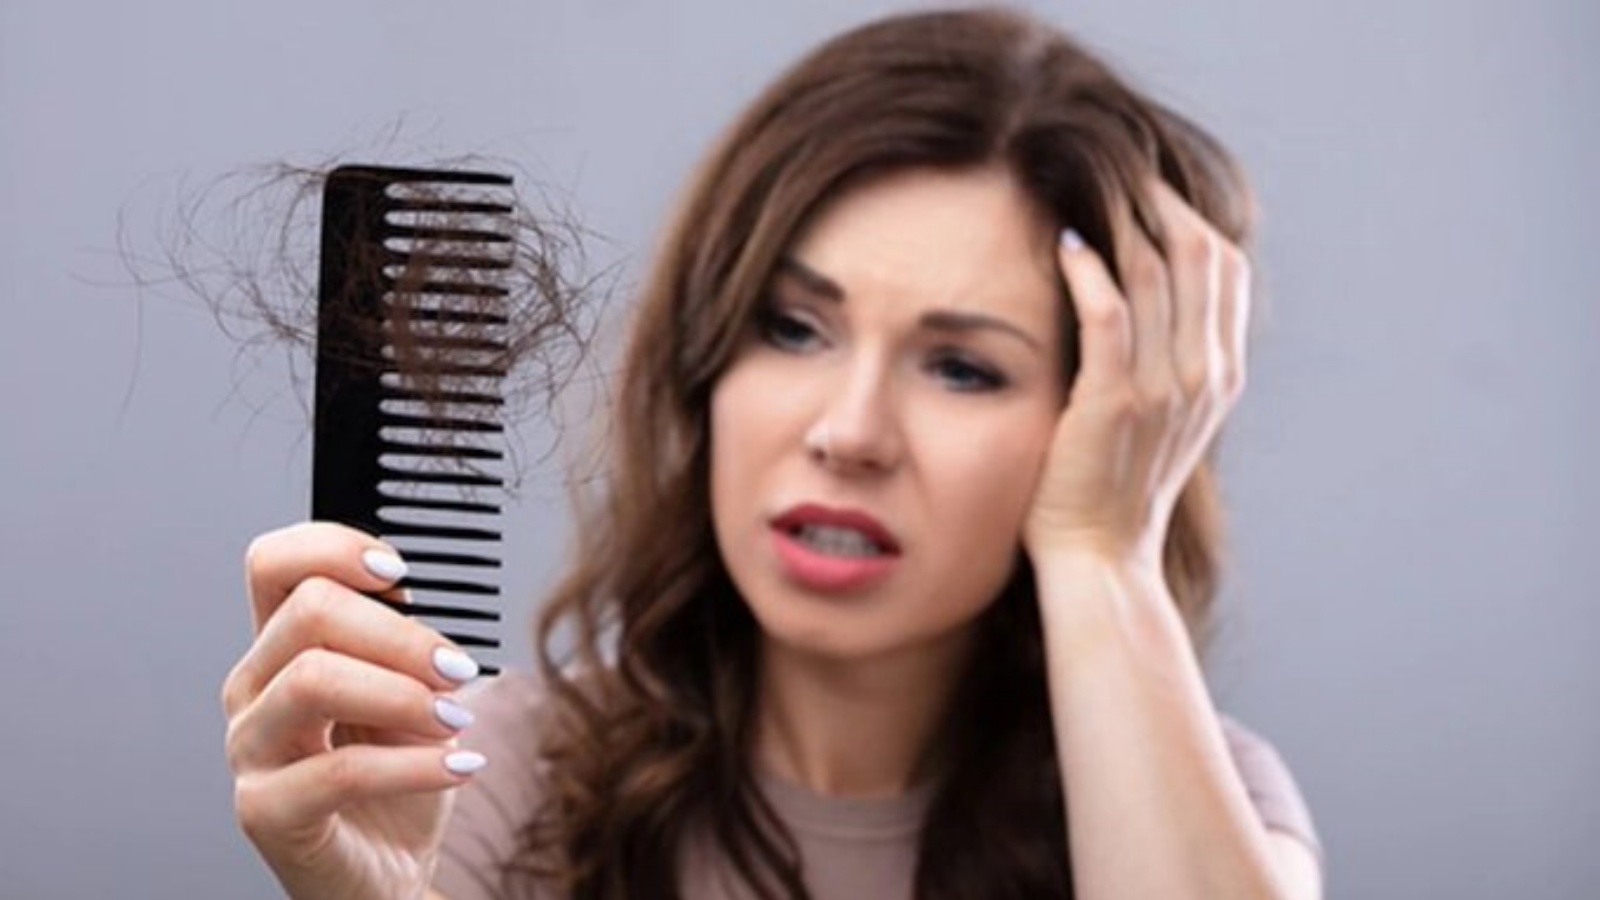 صورة توضيحية نشرتها صفحة Healthik في تويتر عن مشكلة تساقط الشعر.